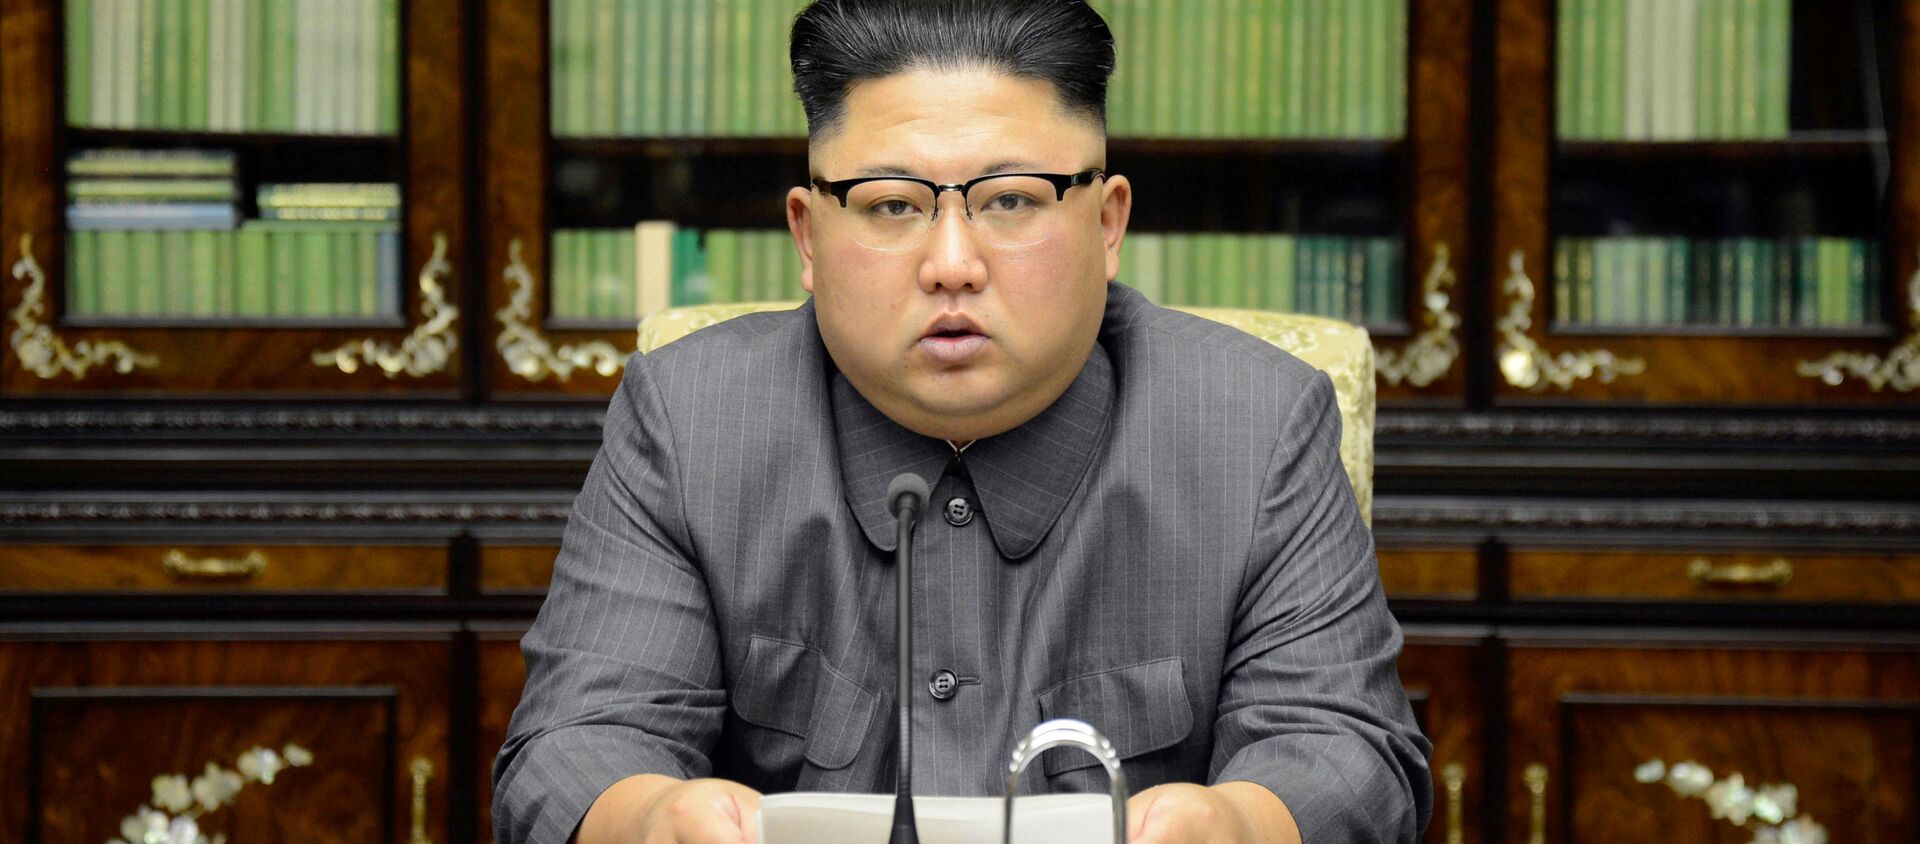 Kuzey Kore lideri Kim Jong-un - Sputnik Türkiye, 1920, 22.09.2017